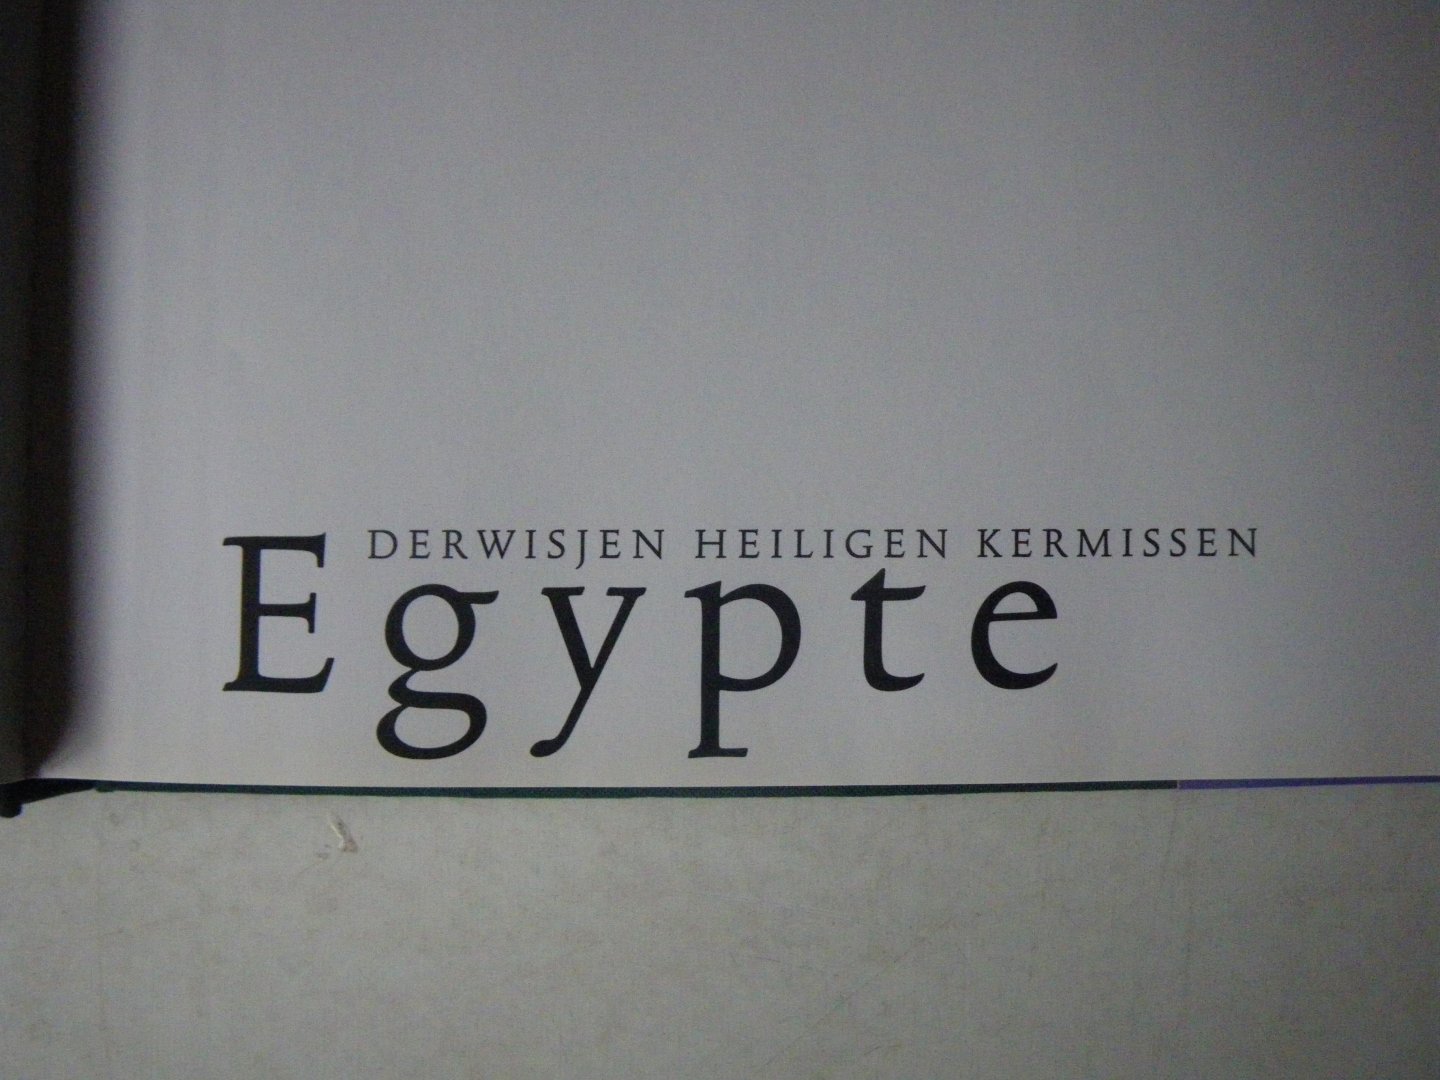 Biegman Nick - Egypte Derwisjen heiligen kermissen